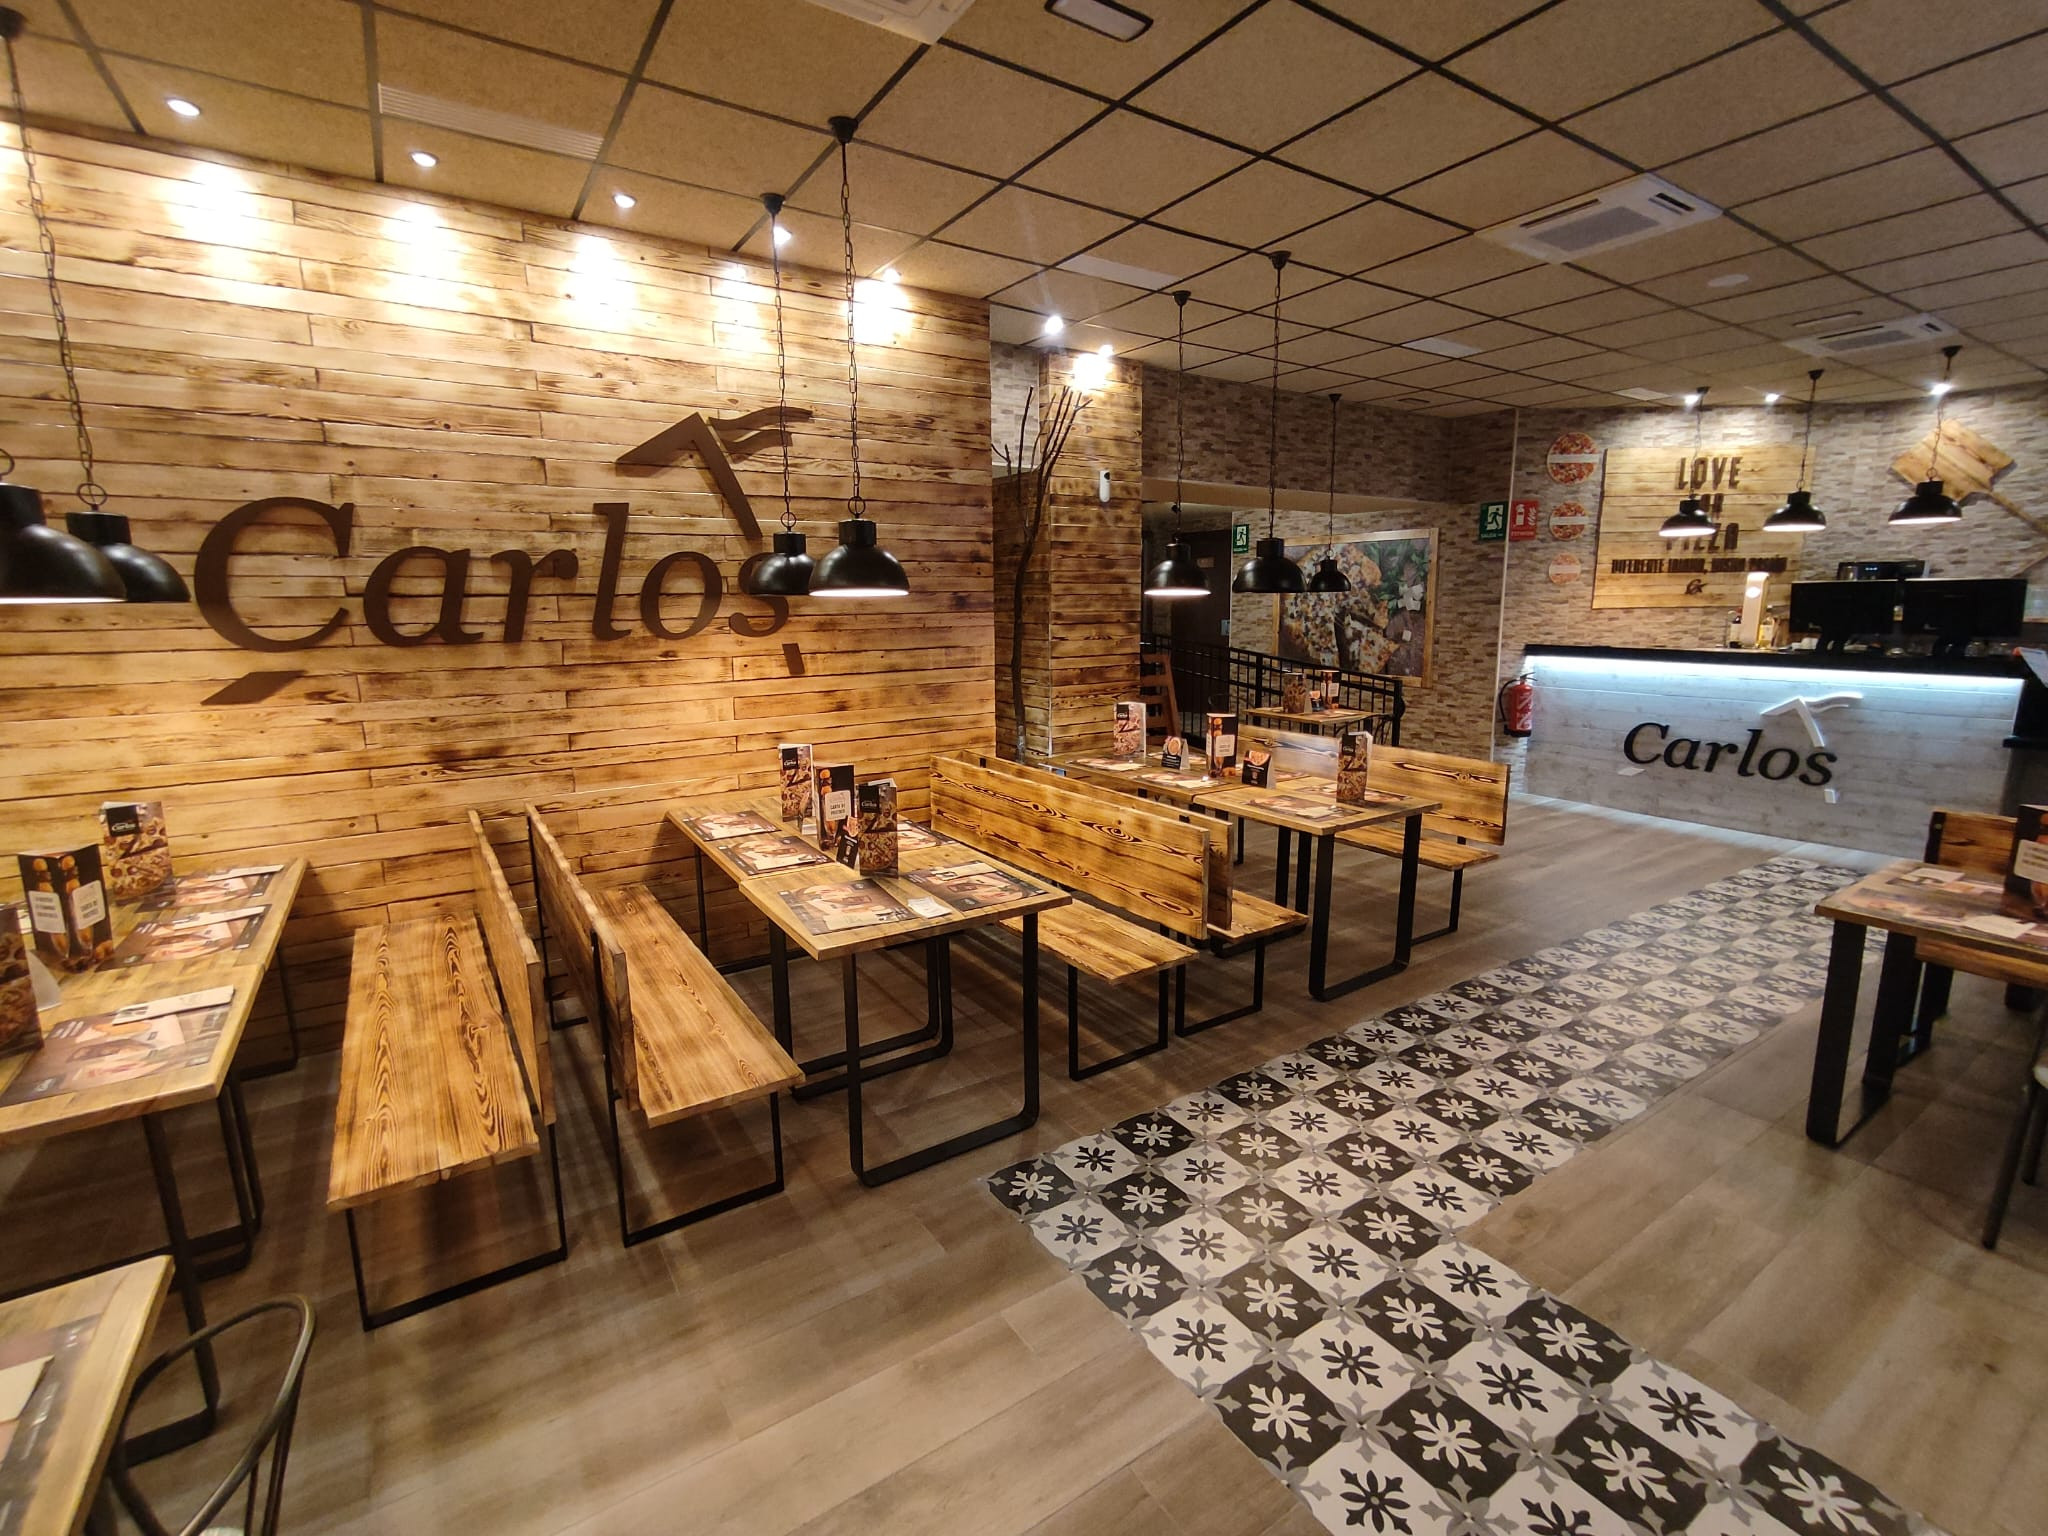 Pizzerías Carlos sigue creciendo con nuevos locales en Galicia y Madrid